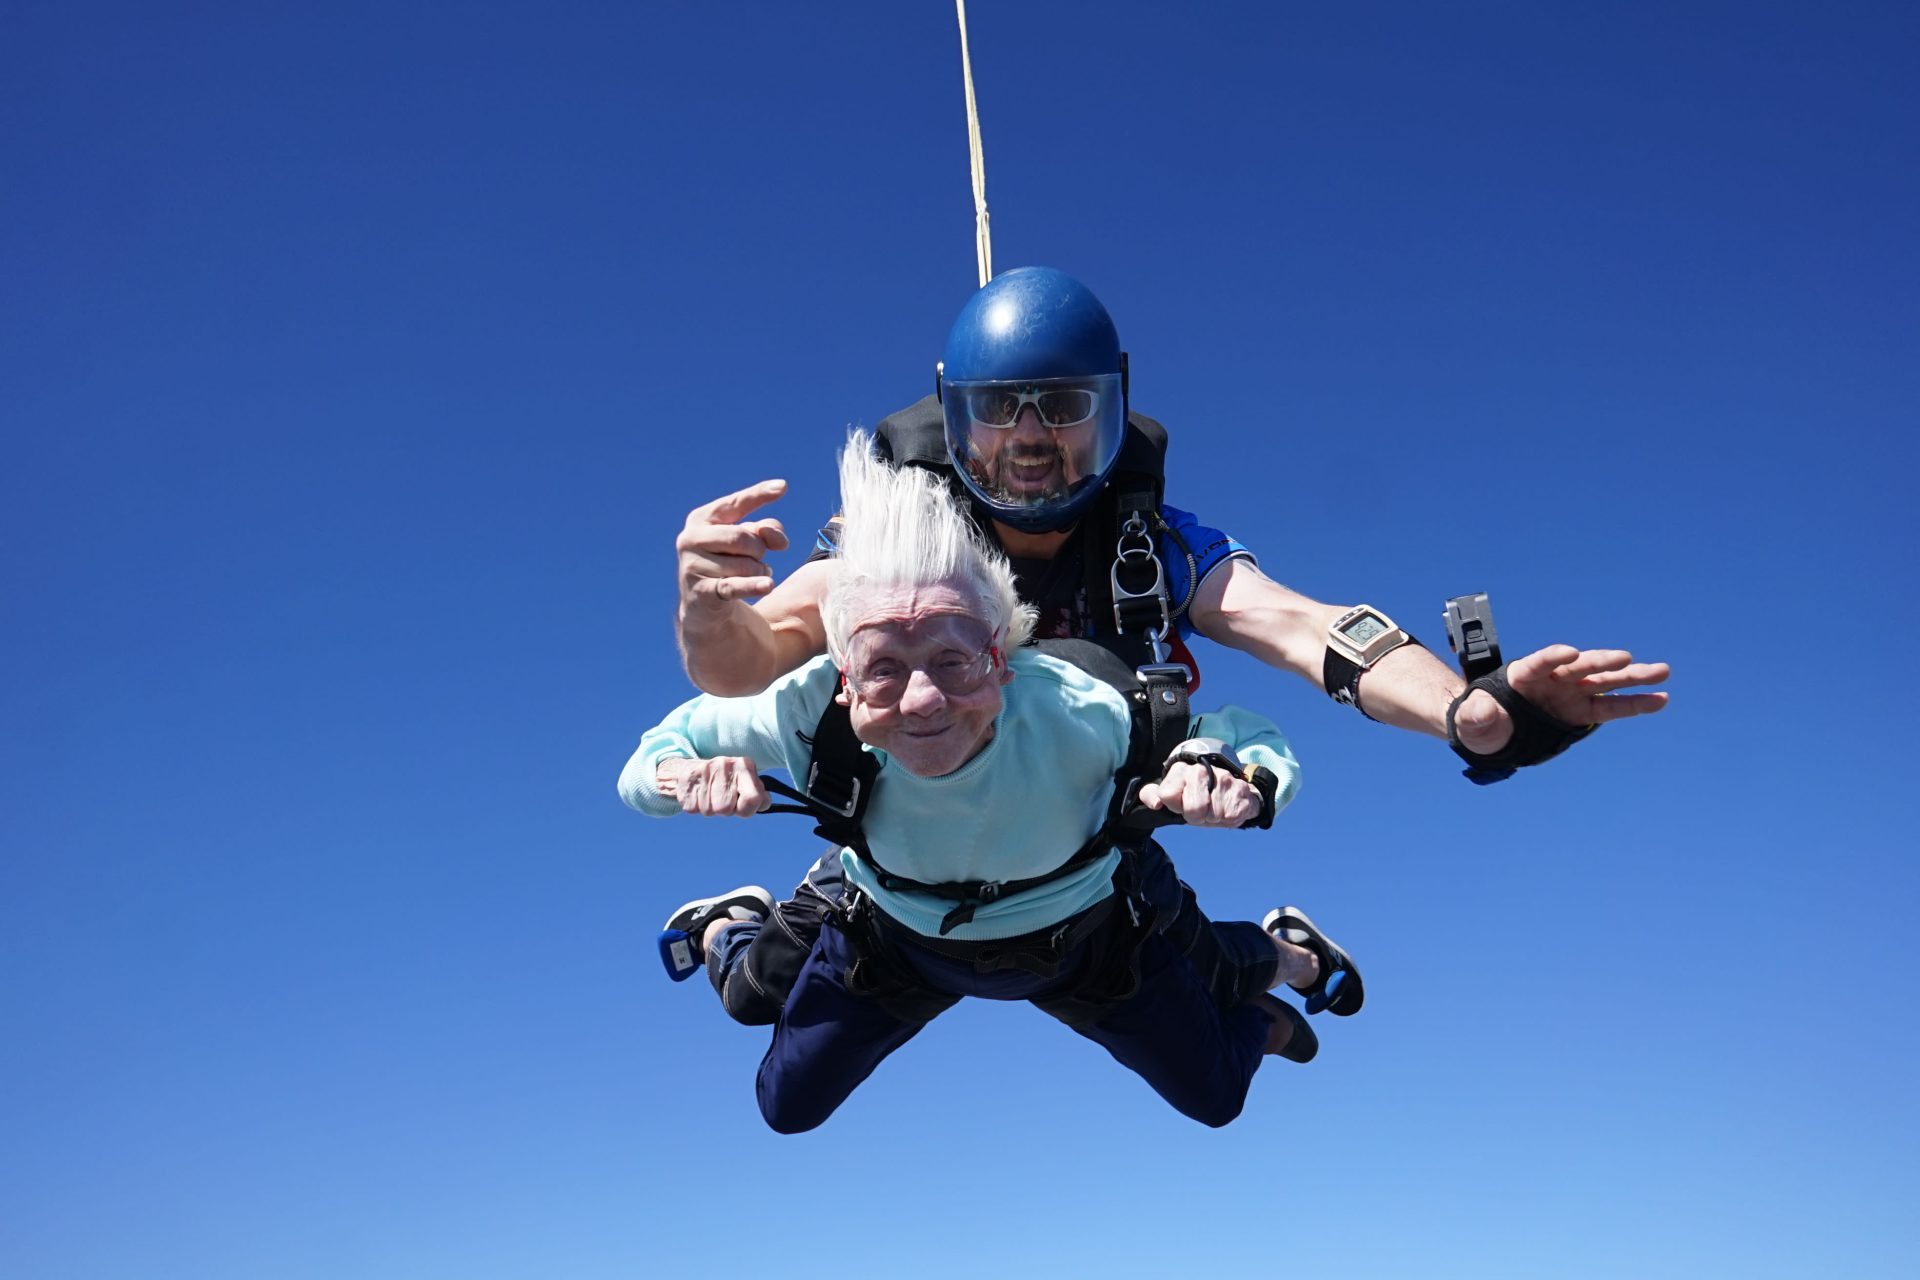 Mulher salta de paraquedas aos 104 anos e entra para o Guinness